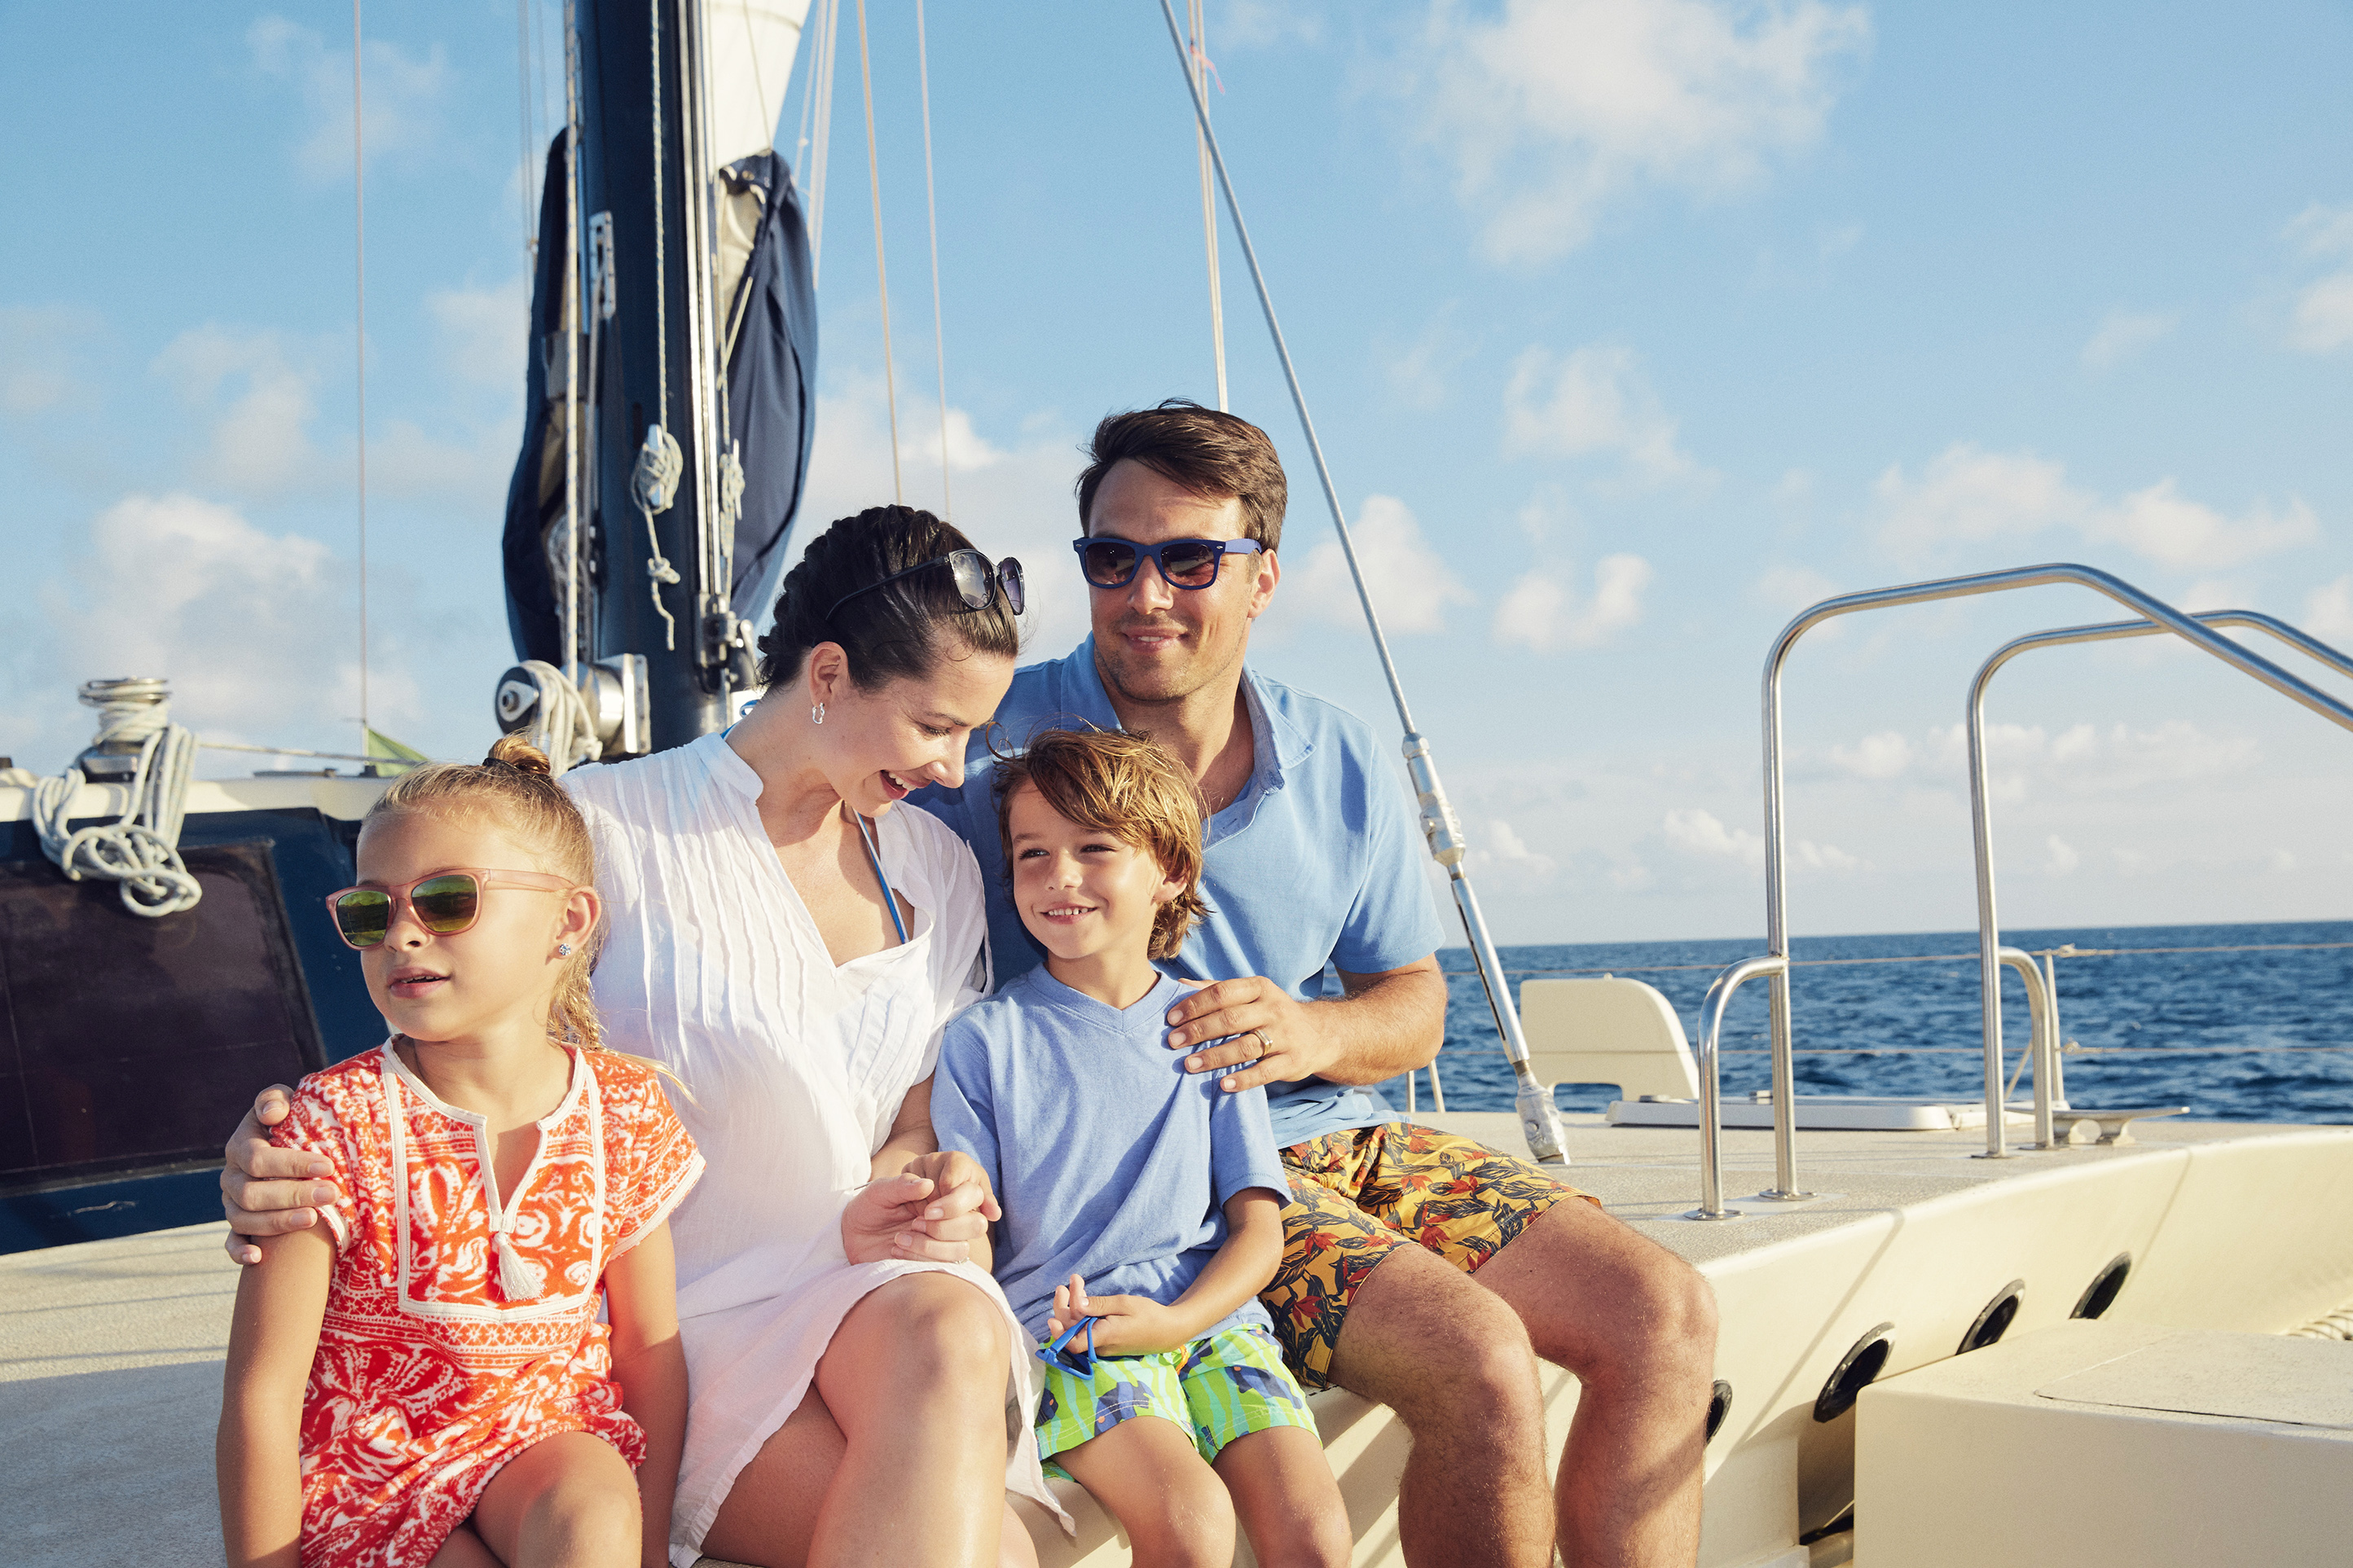 Una familia disfrutando de una tarde soleada en un catamarán.